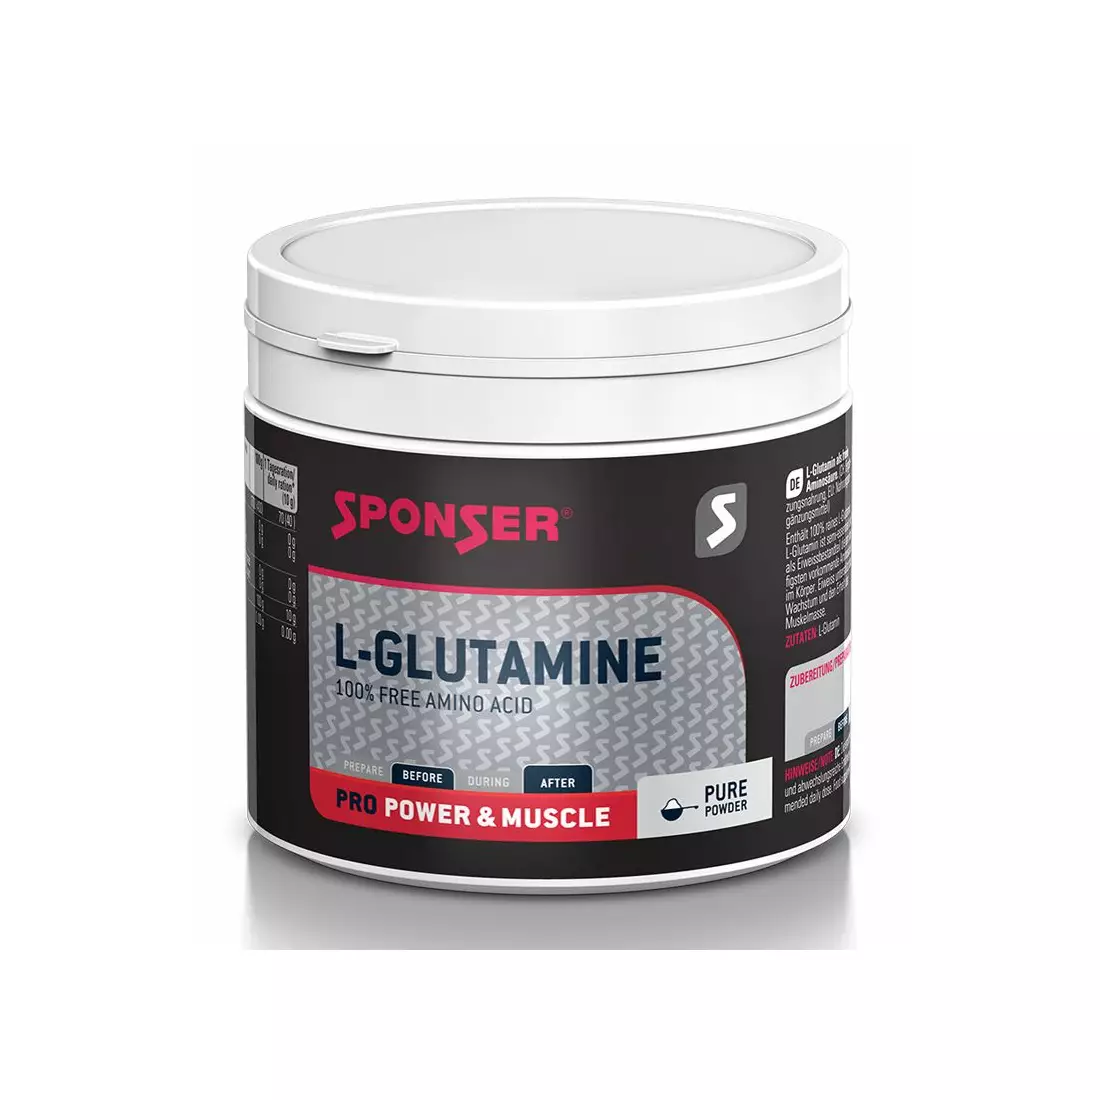 Čistý glutamín SPONSER L-GLUTAMINE 100% PURE plechovka 350g 